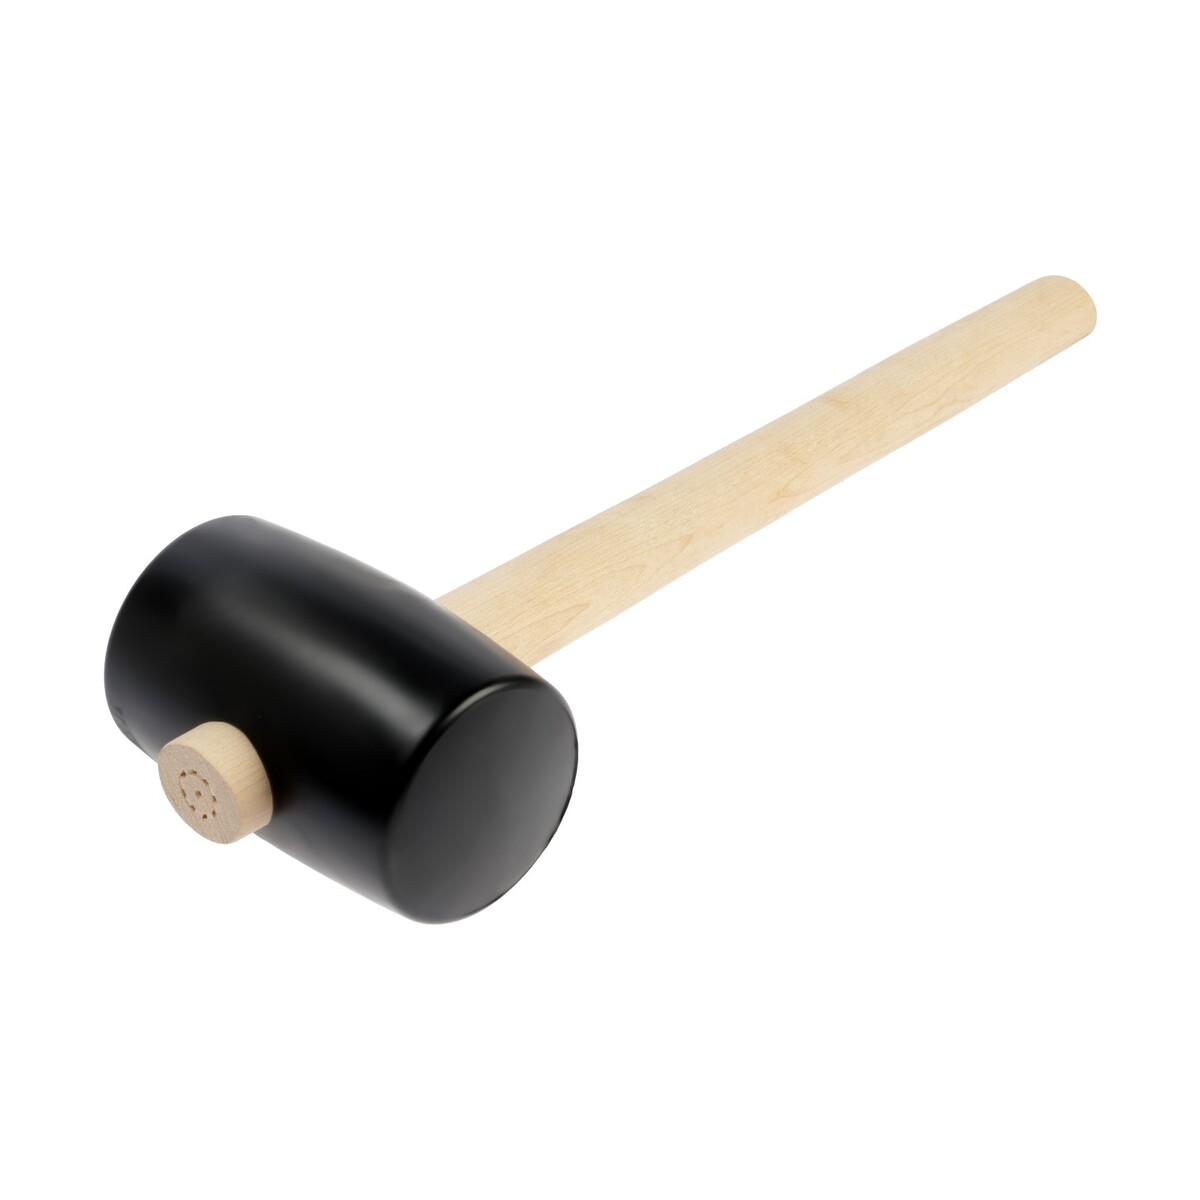 Киянка лом, деревянная рукоятка, черная резина, 75 мм, 700 г киянка лом деревянная рукоятка черная резина 45 мм 200 г